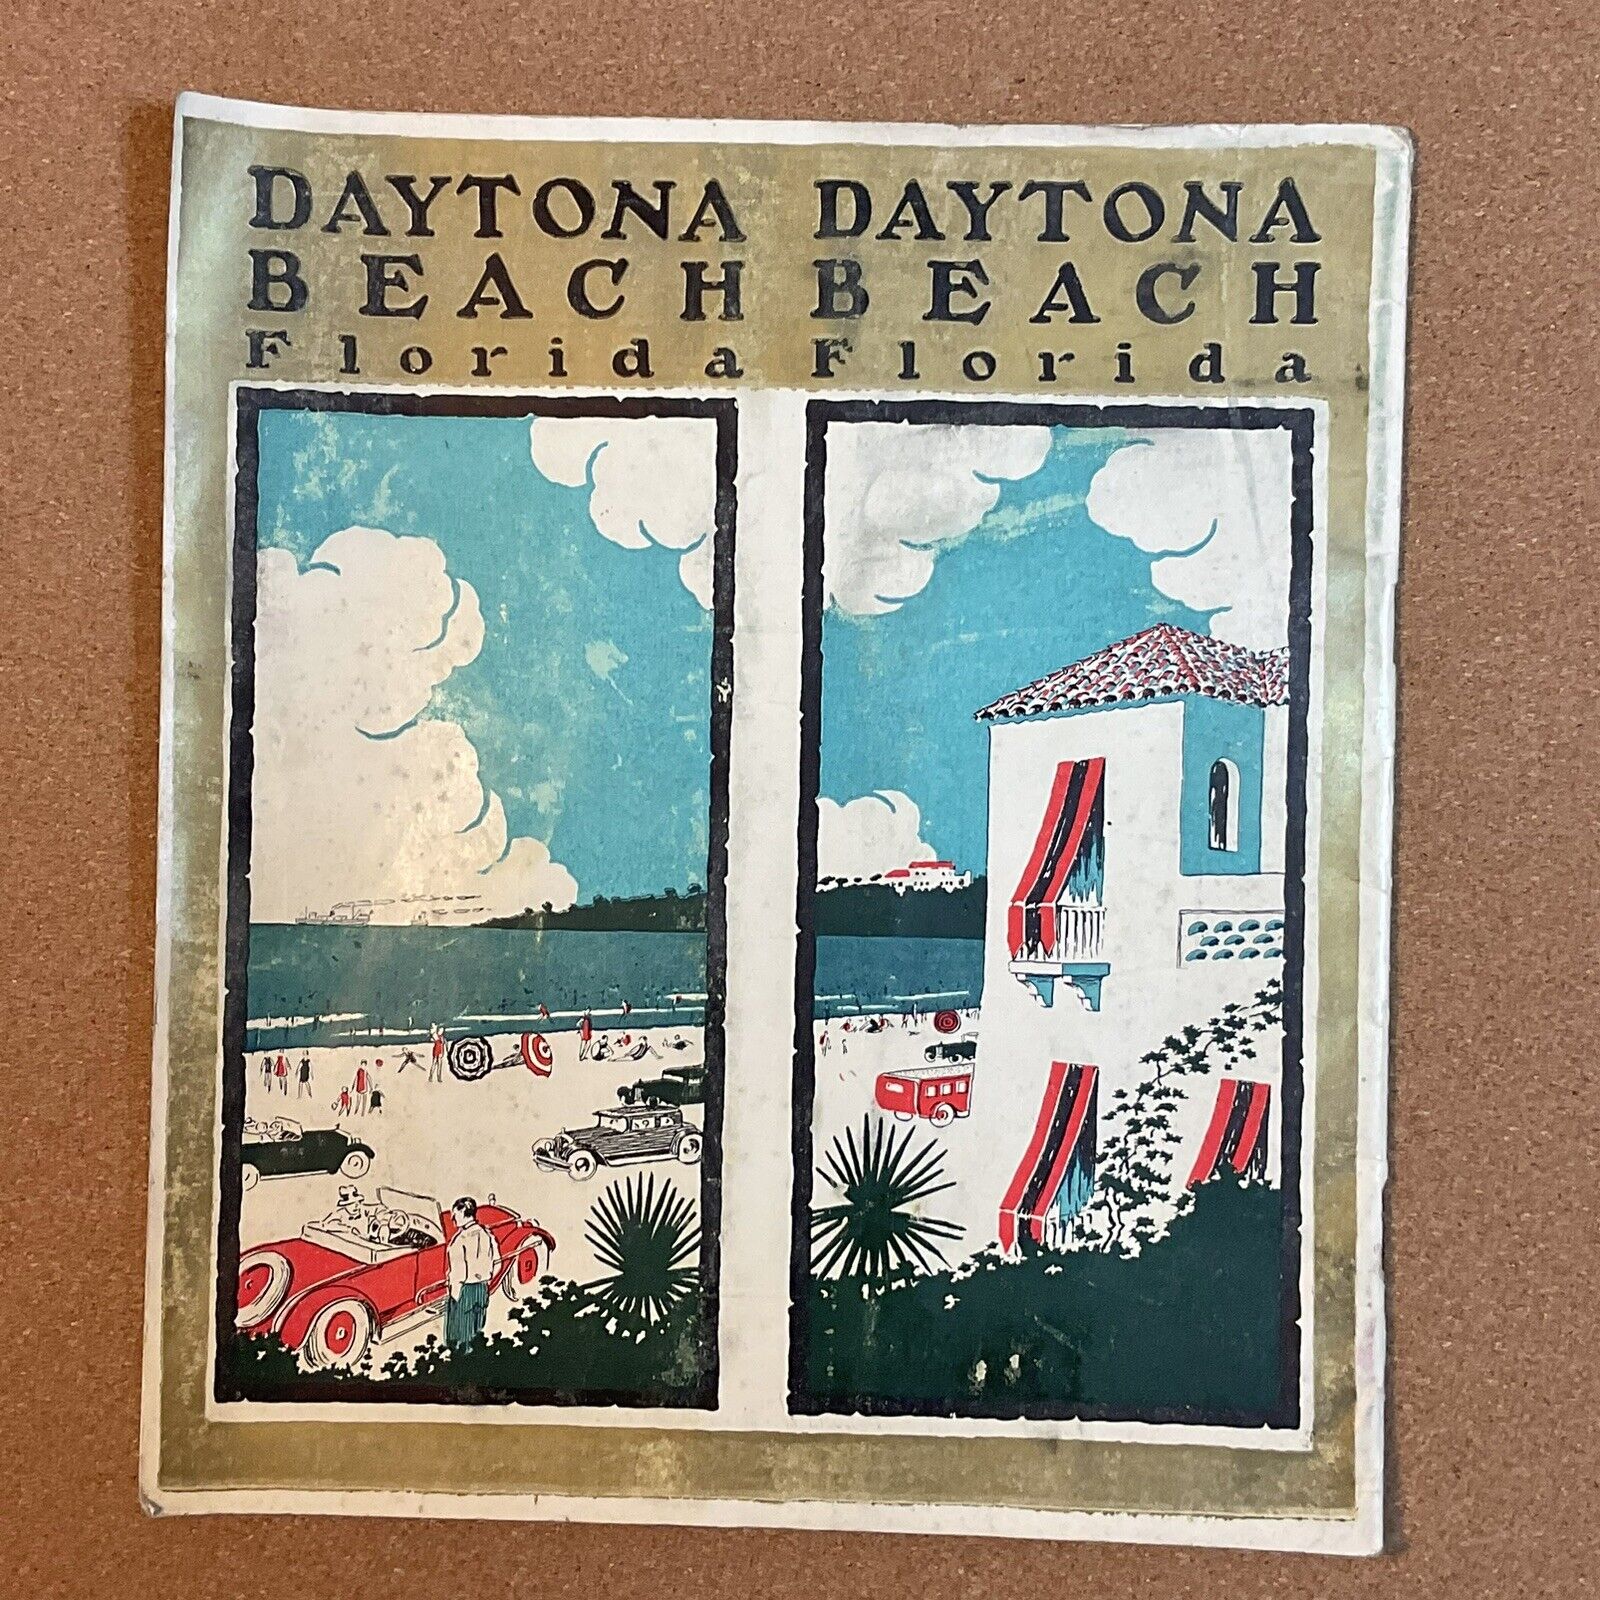 🌴 DAYTONA BEACH FLORIDA | 1920’S VTG TOURISM BROCHURE | ART DECO LITHO COVER